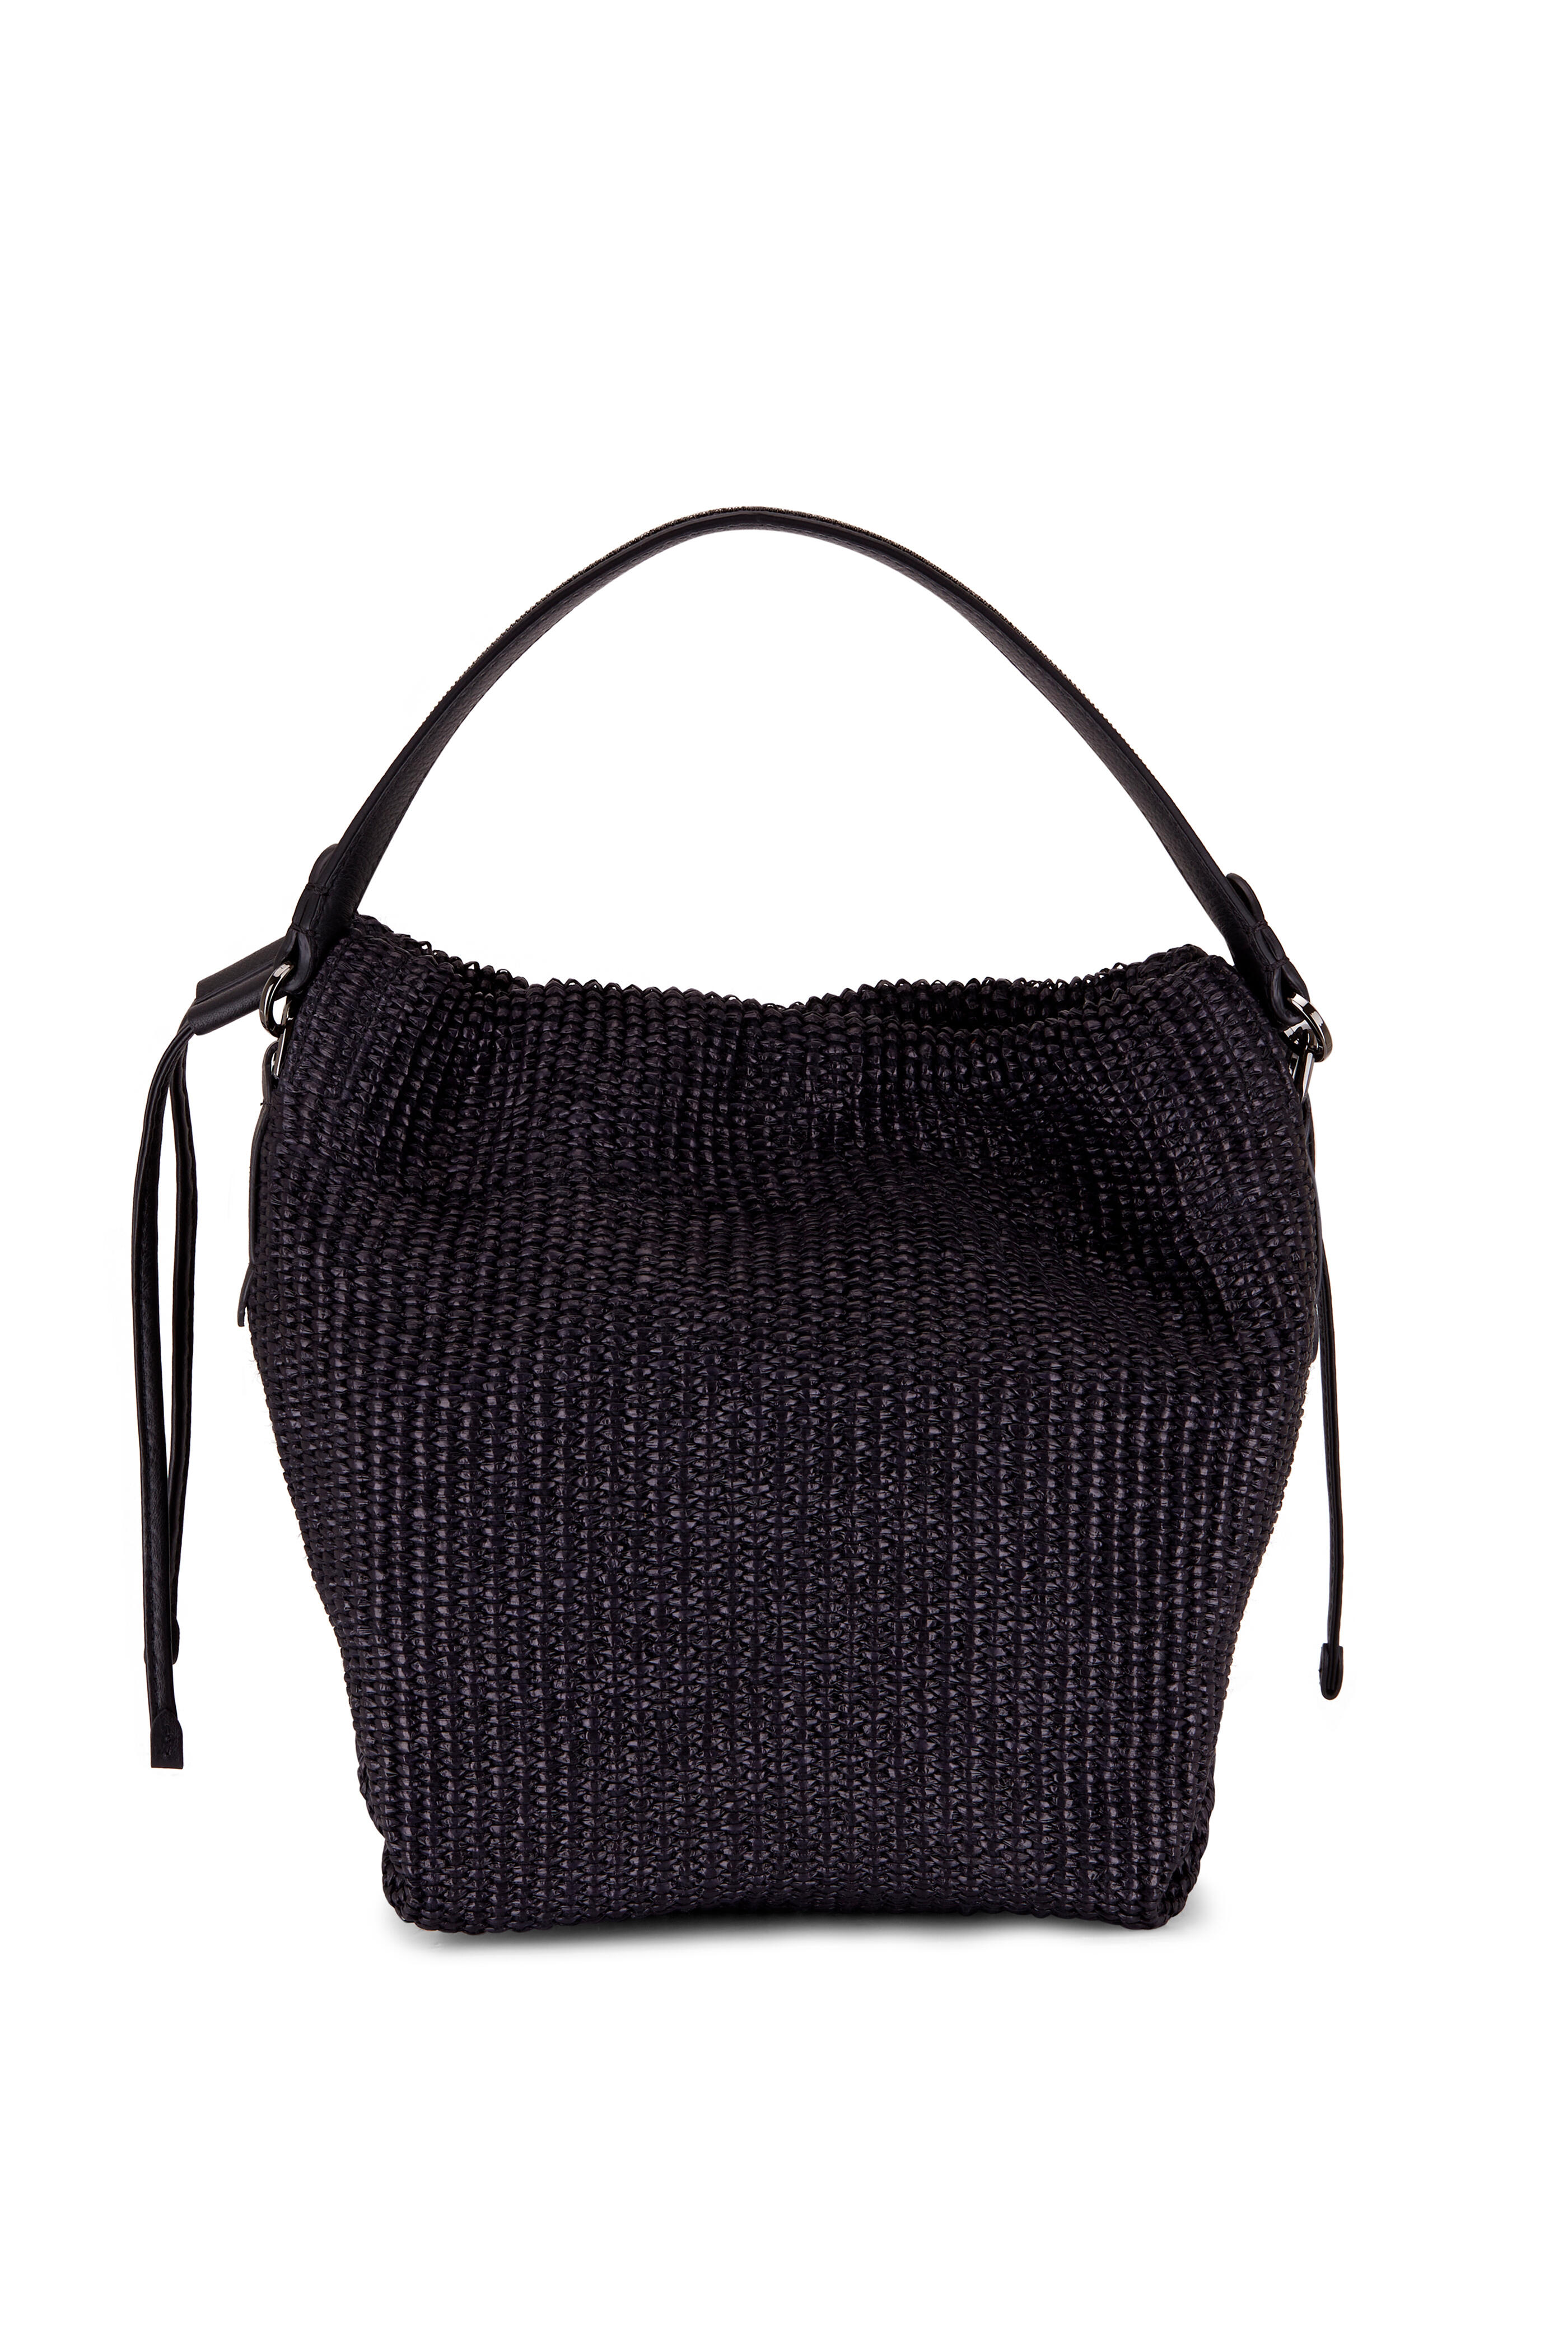 Brunello Cucinelli - Black Raffia Cinched Top Handle Shoulder Bag